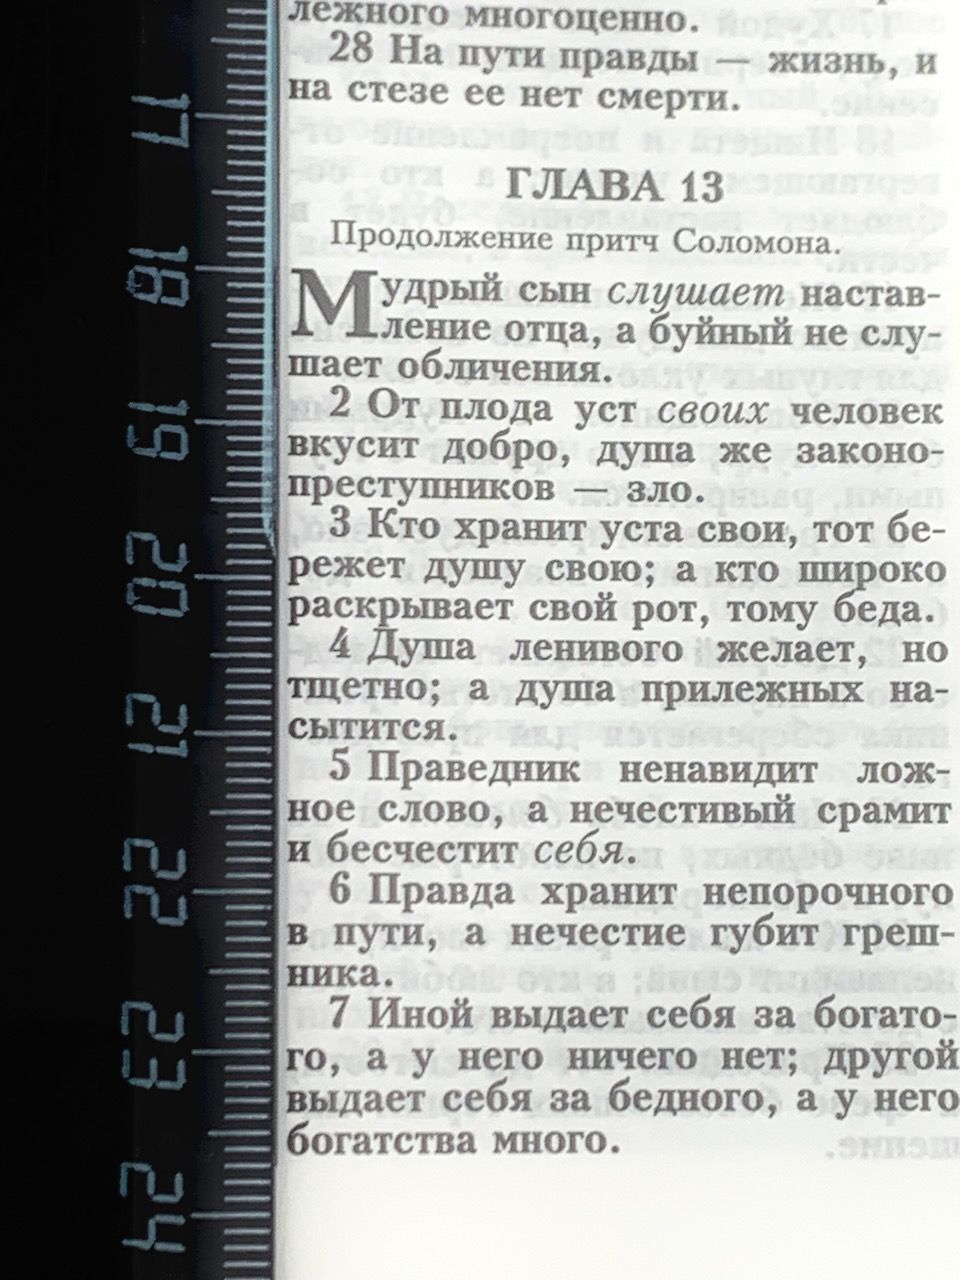 Библия 053zti код A7 надпись "Библия", кожаный переплет на молнии с индексами, цвет темно-синий пятнистый, формат 140*202 мм